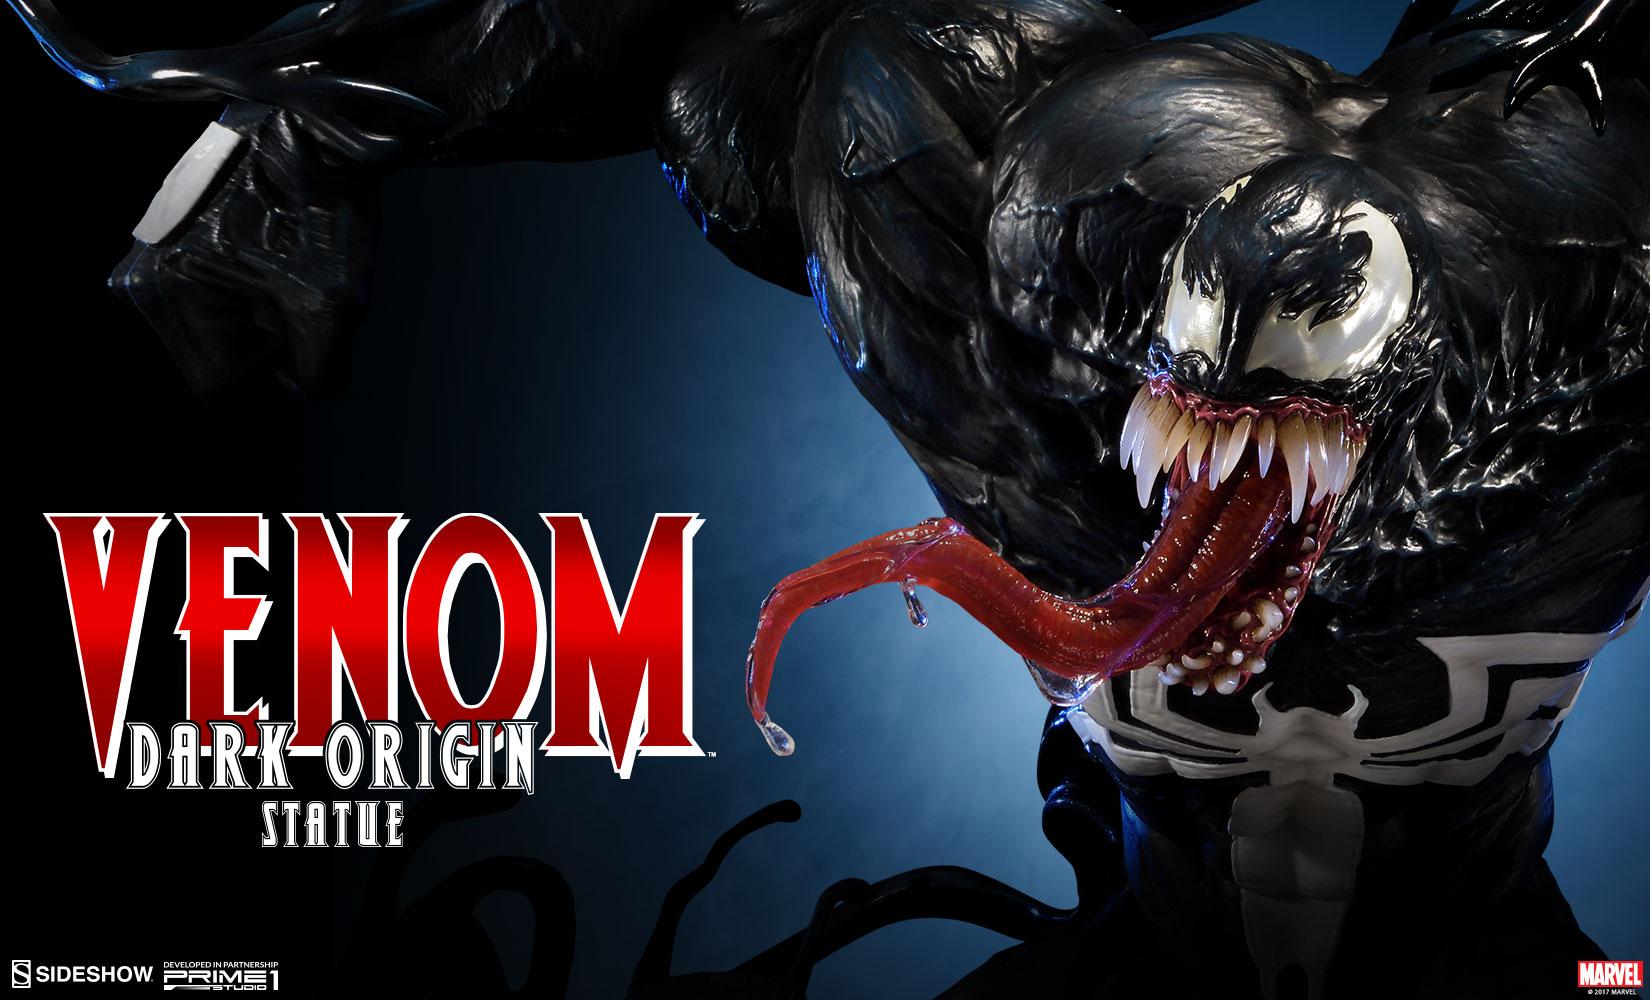 Venom Dark Origins Statue